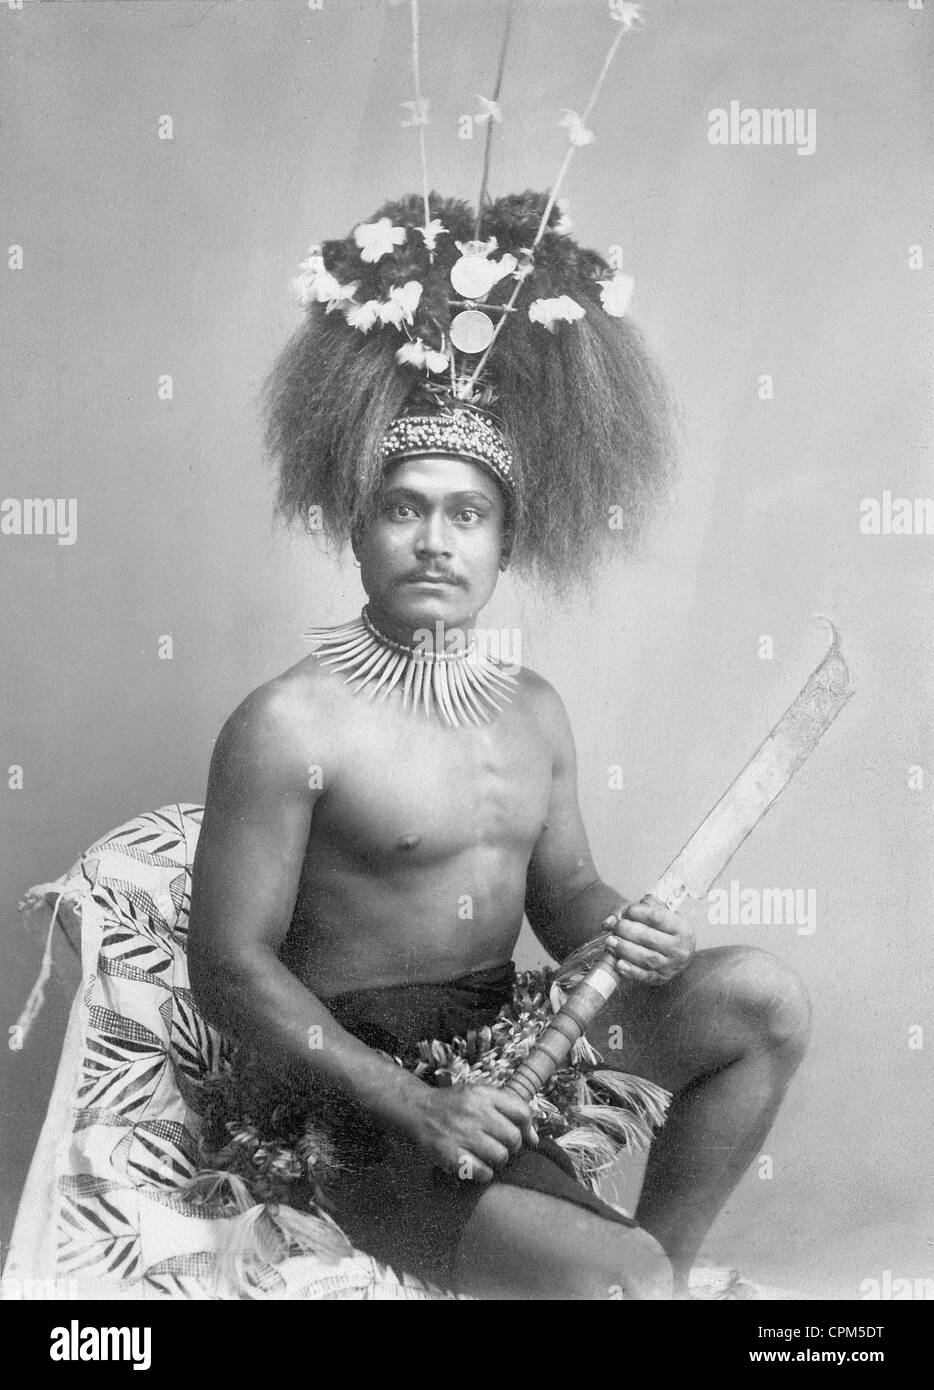 Guerrero de Samoa, aprox. 1900 Foto de stock